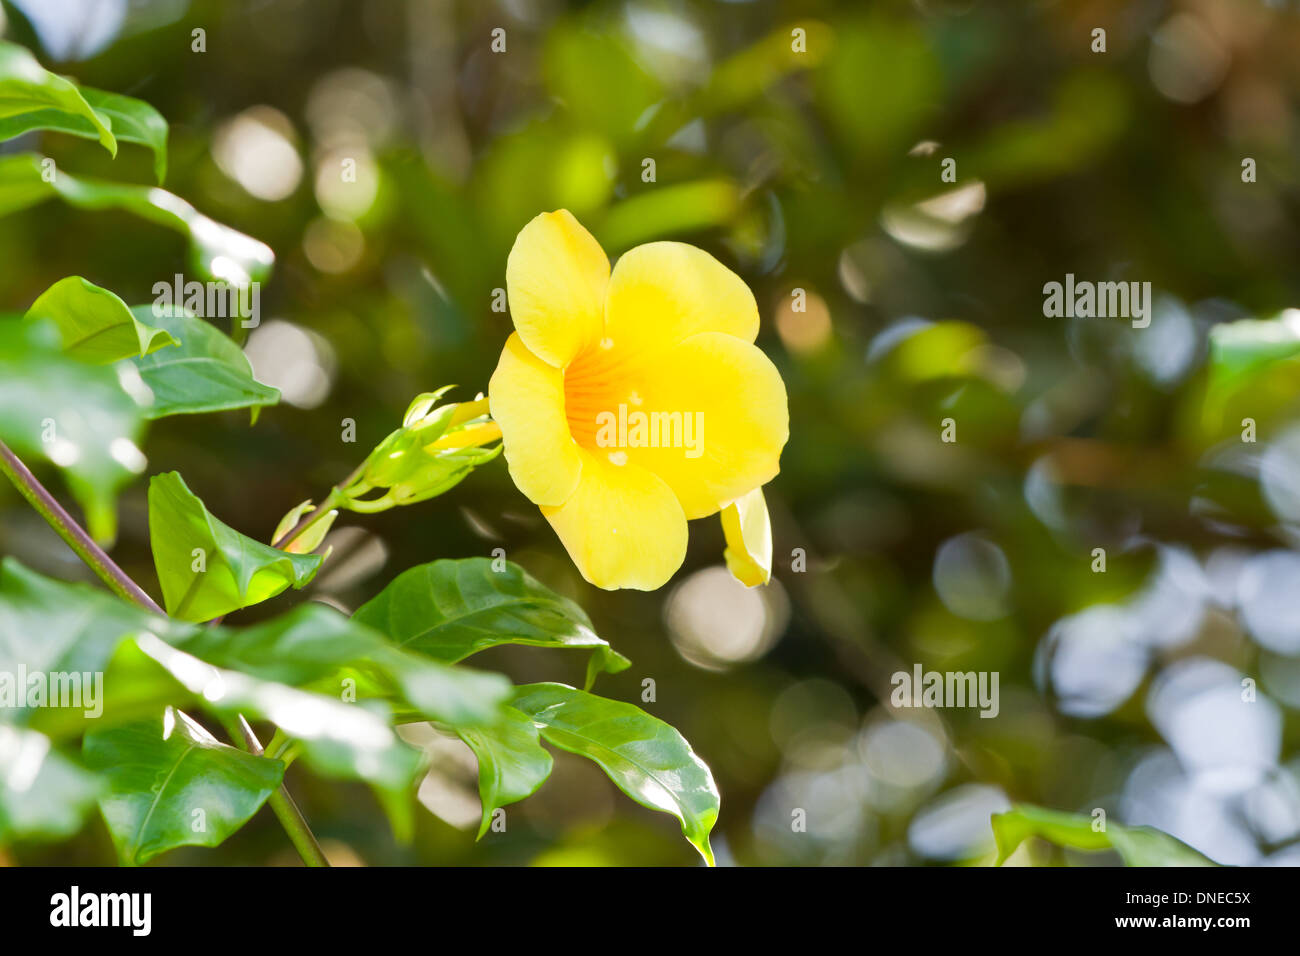 Allamanda florece bajo el sol de los trópicos de Belice Foto de stock